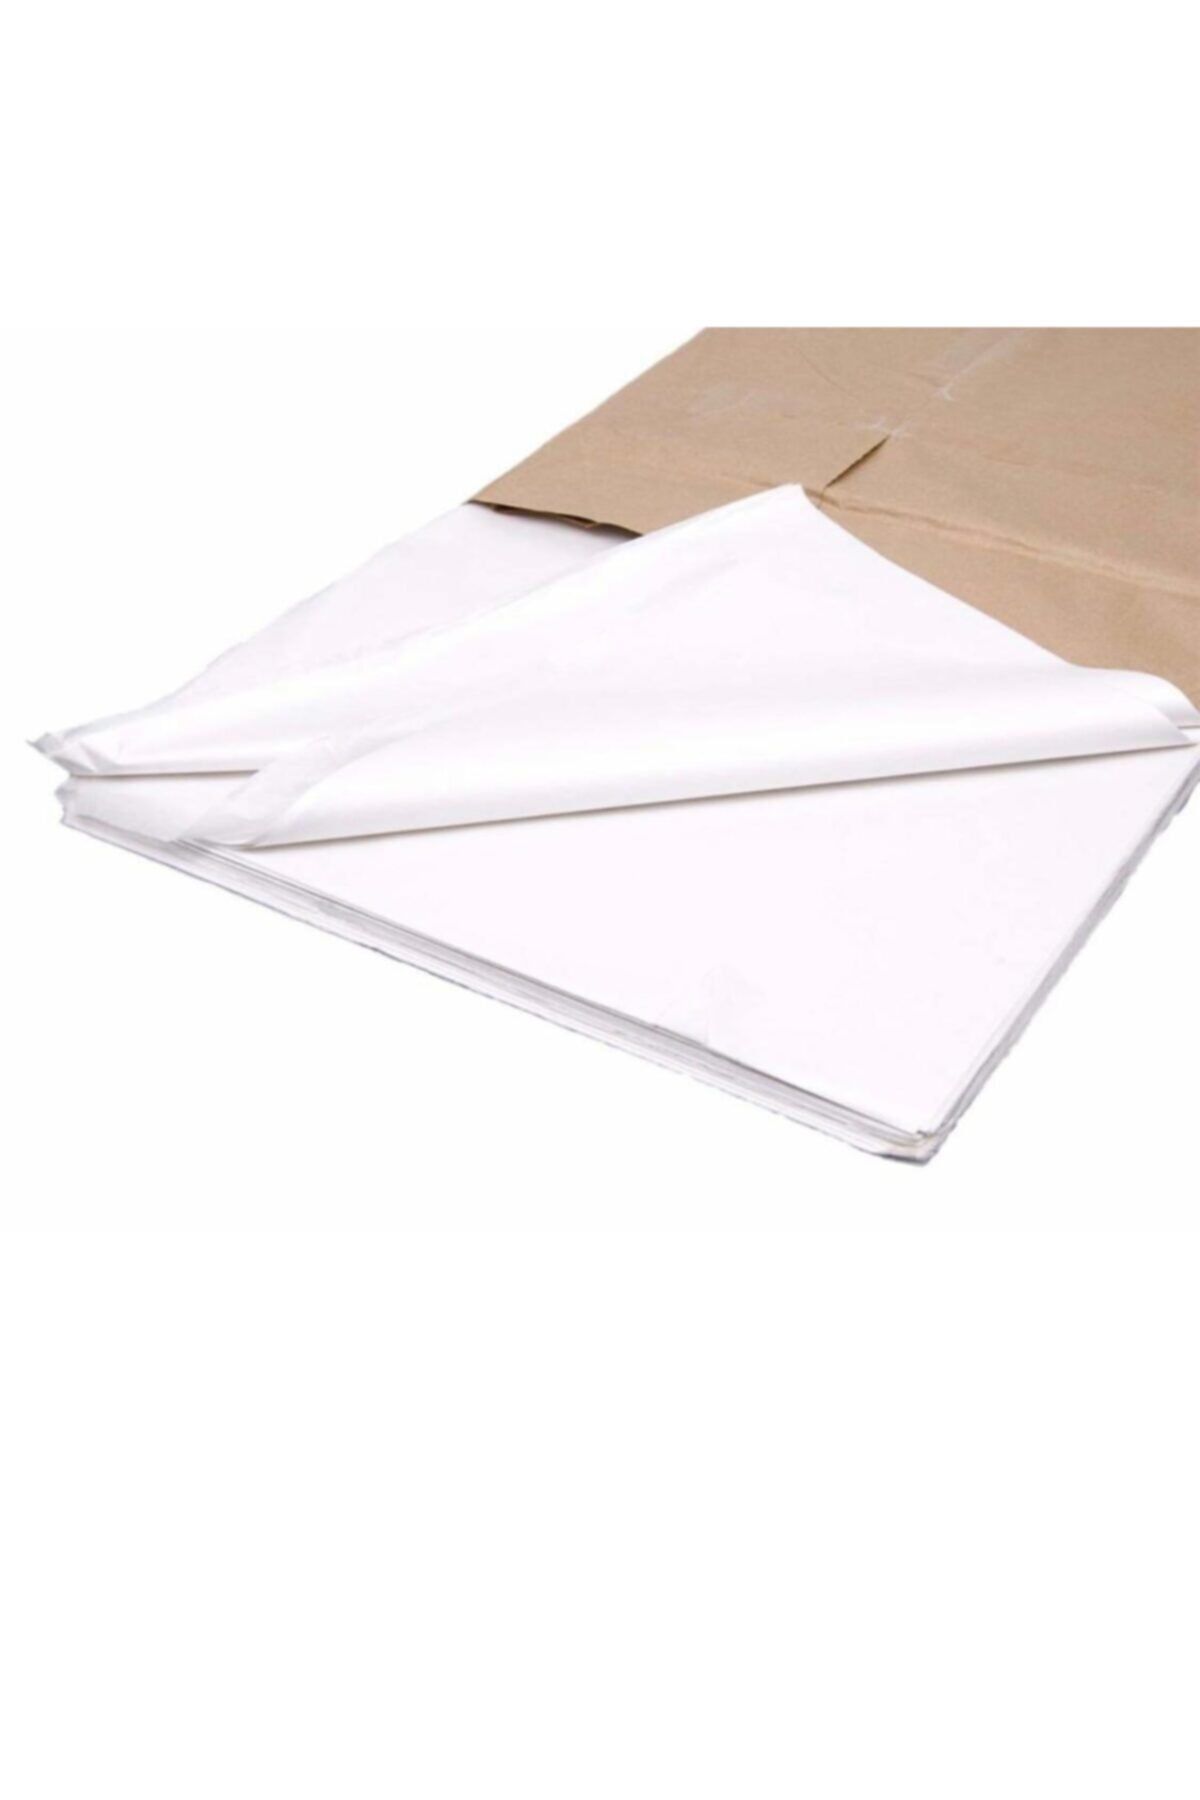 Ambalaj Atölyesi Beyaz Pelur Kağıt Hediye Paketleme Ambalaj Kağıdı 50x35 Cm Boy 50 Adet